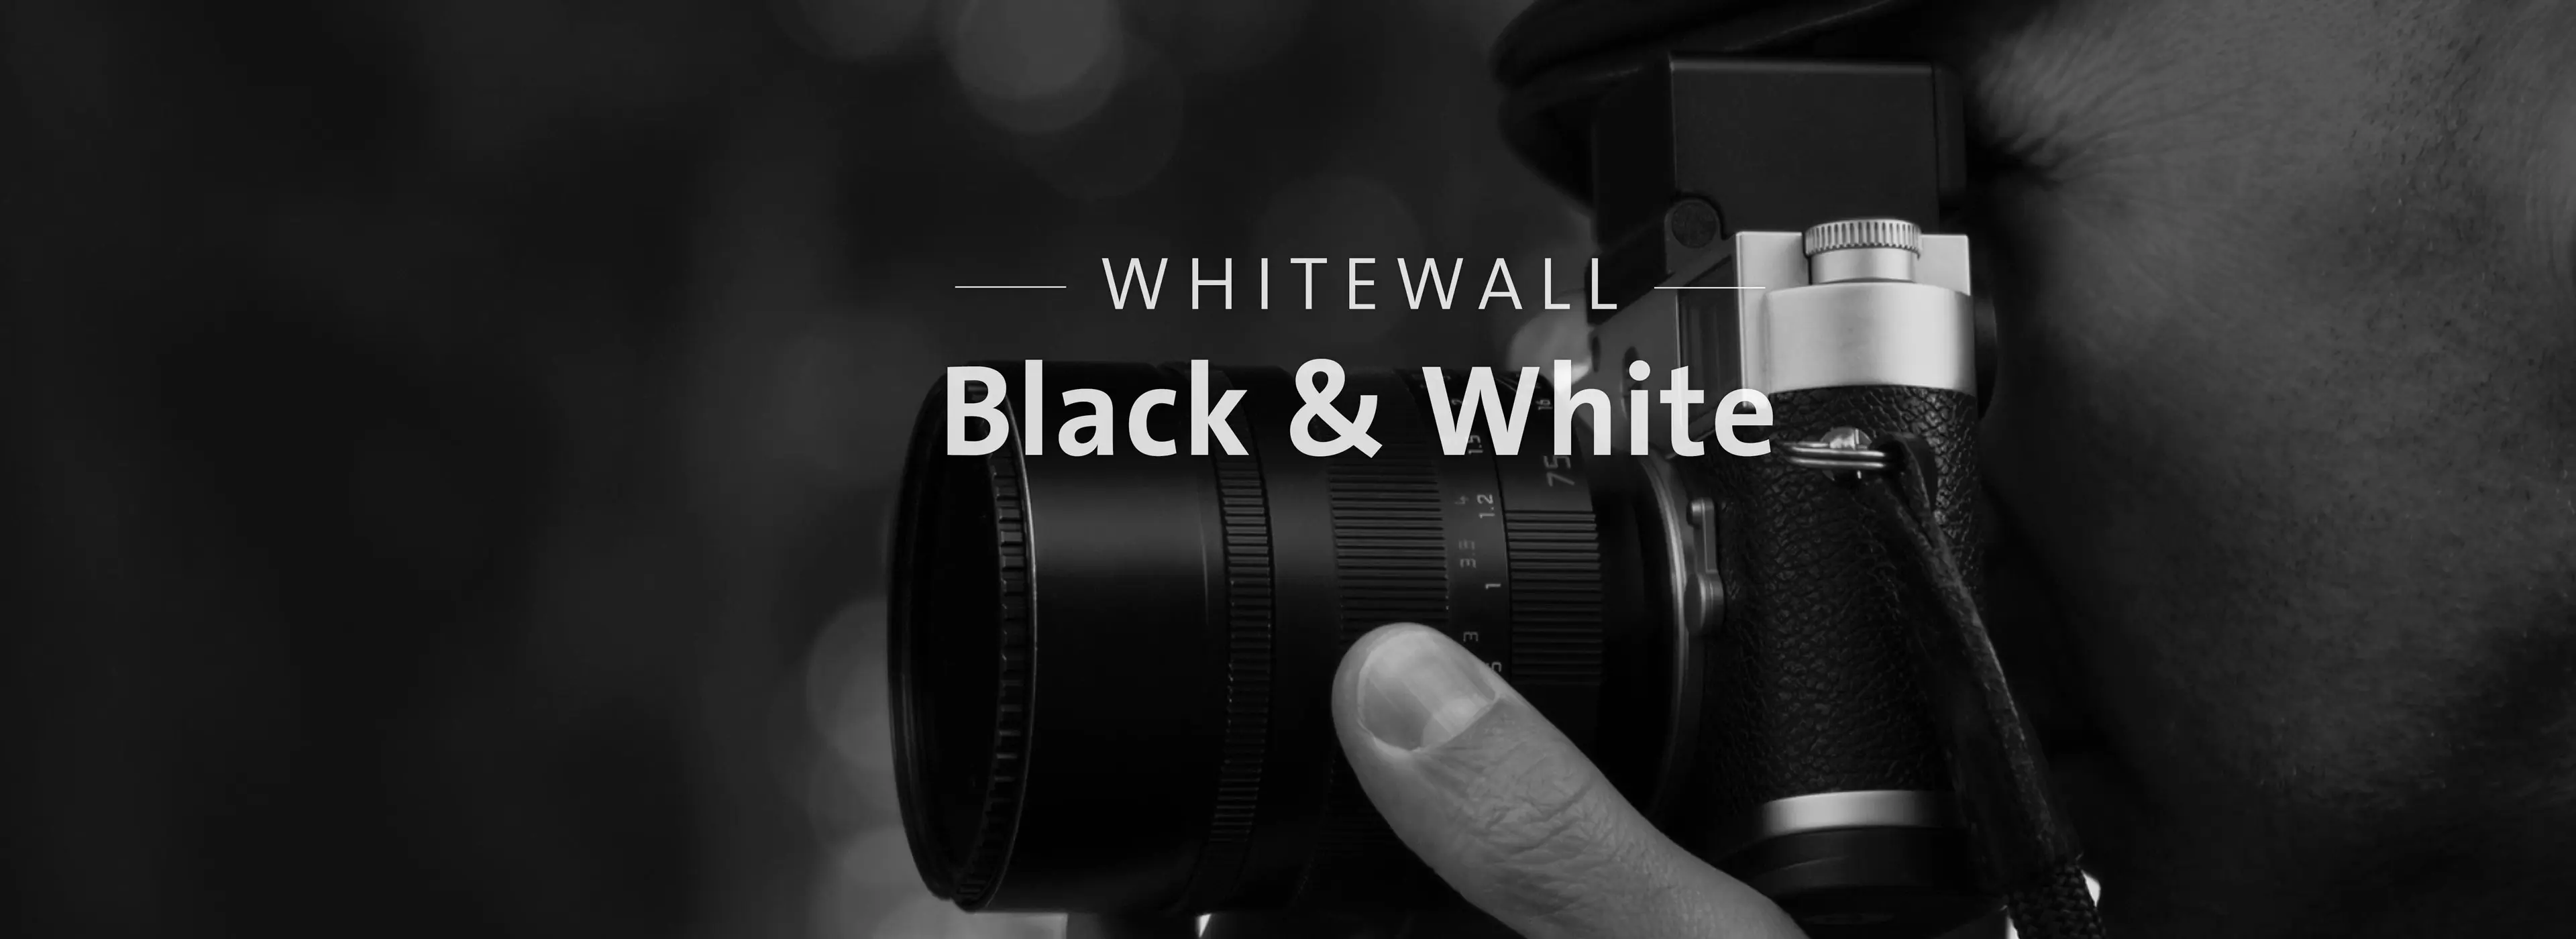 280830_WhiteWall-Black&White-LP-videoframe_desktop.jpg